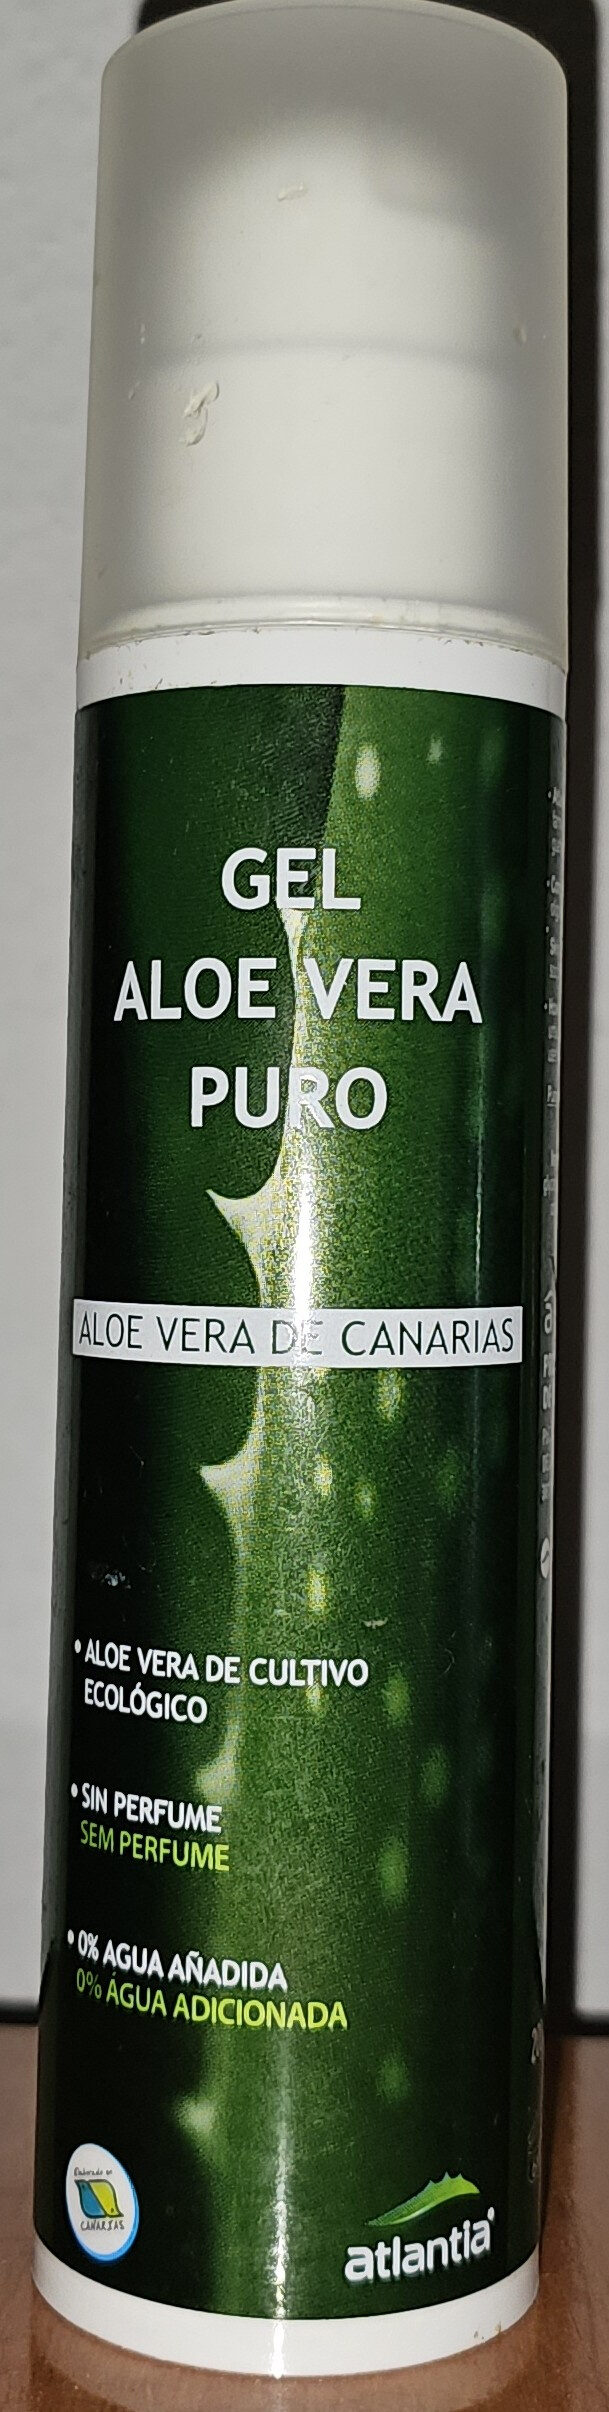 Gel aloe Vera puro - Product - en